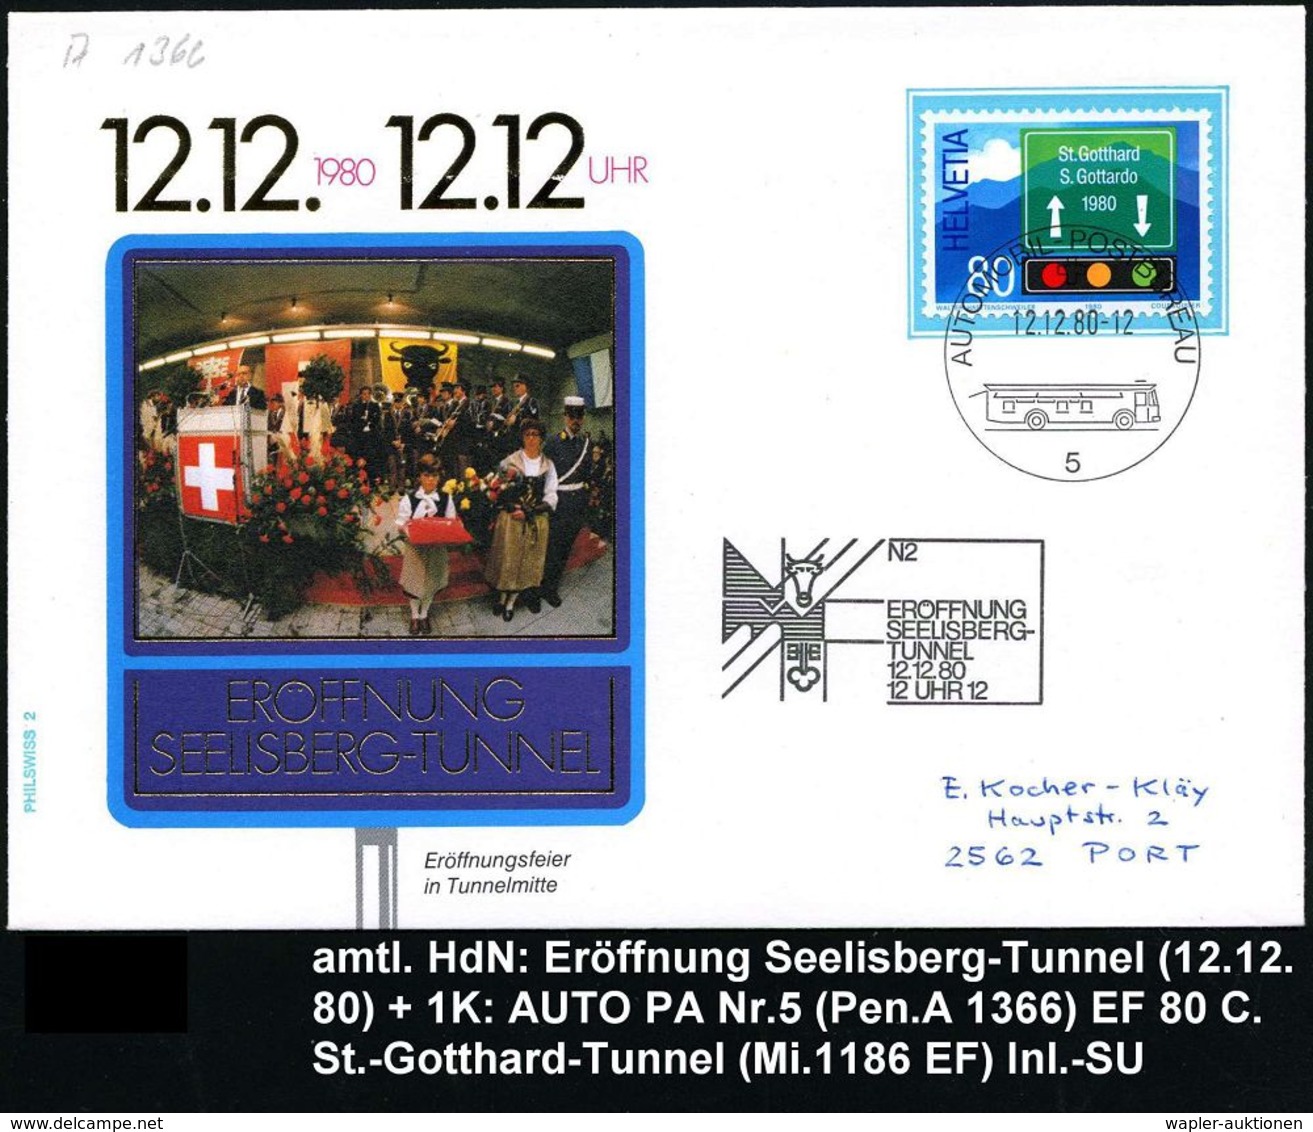 STRASSE / VERKEHRSWEGE / AUTOBAHN : SCHWEIZ 1980 (12.12.) HdN: N2/ERÖFFNUNG/SEELISBERG-/TUNNEL/..12 UHR 12 + 1K.: AUTO-P - Cars